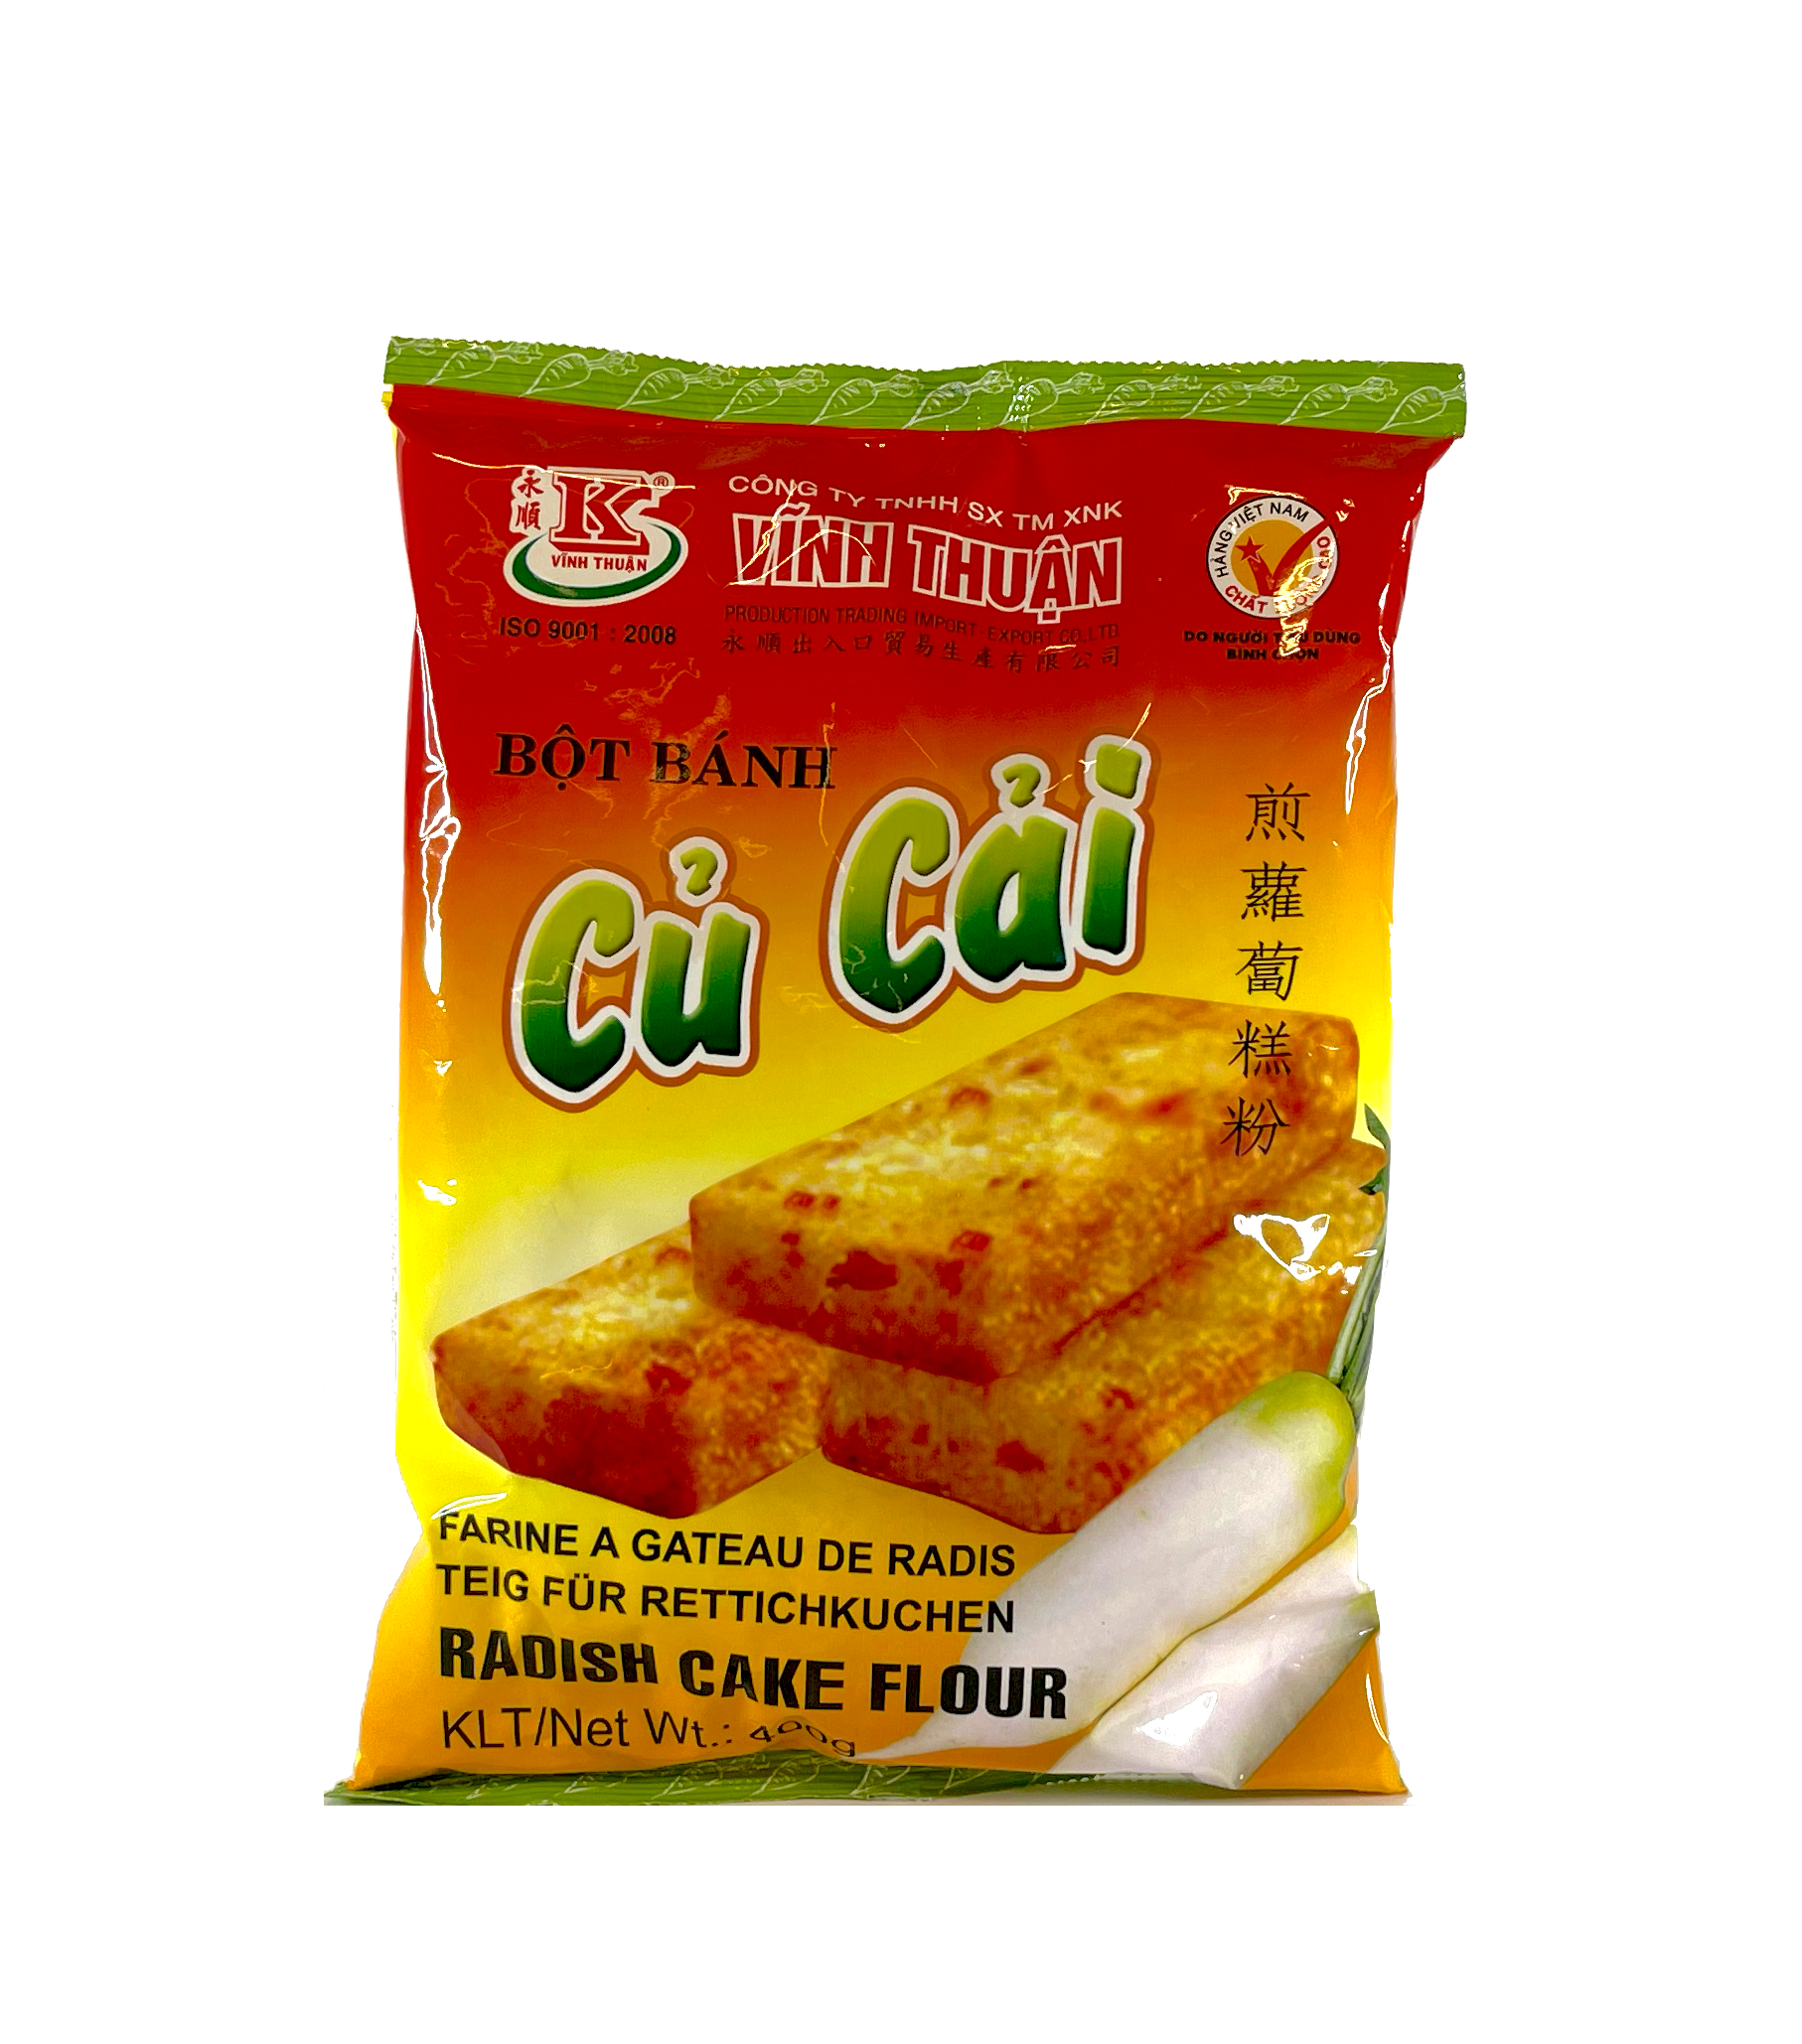 煎萝卜糕粉/Bôt Bánh Cú Cái 400g Vinh Thuan 越南